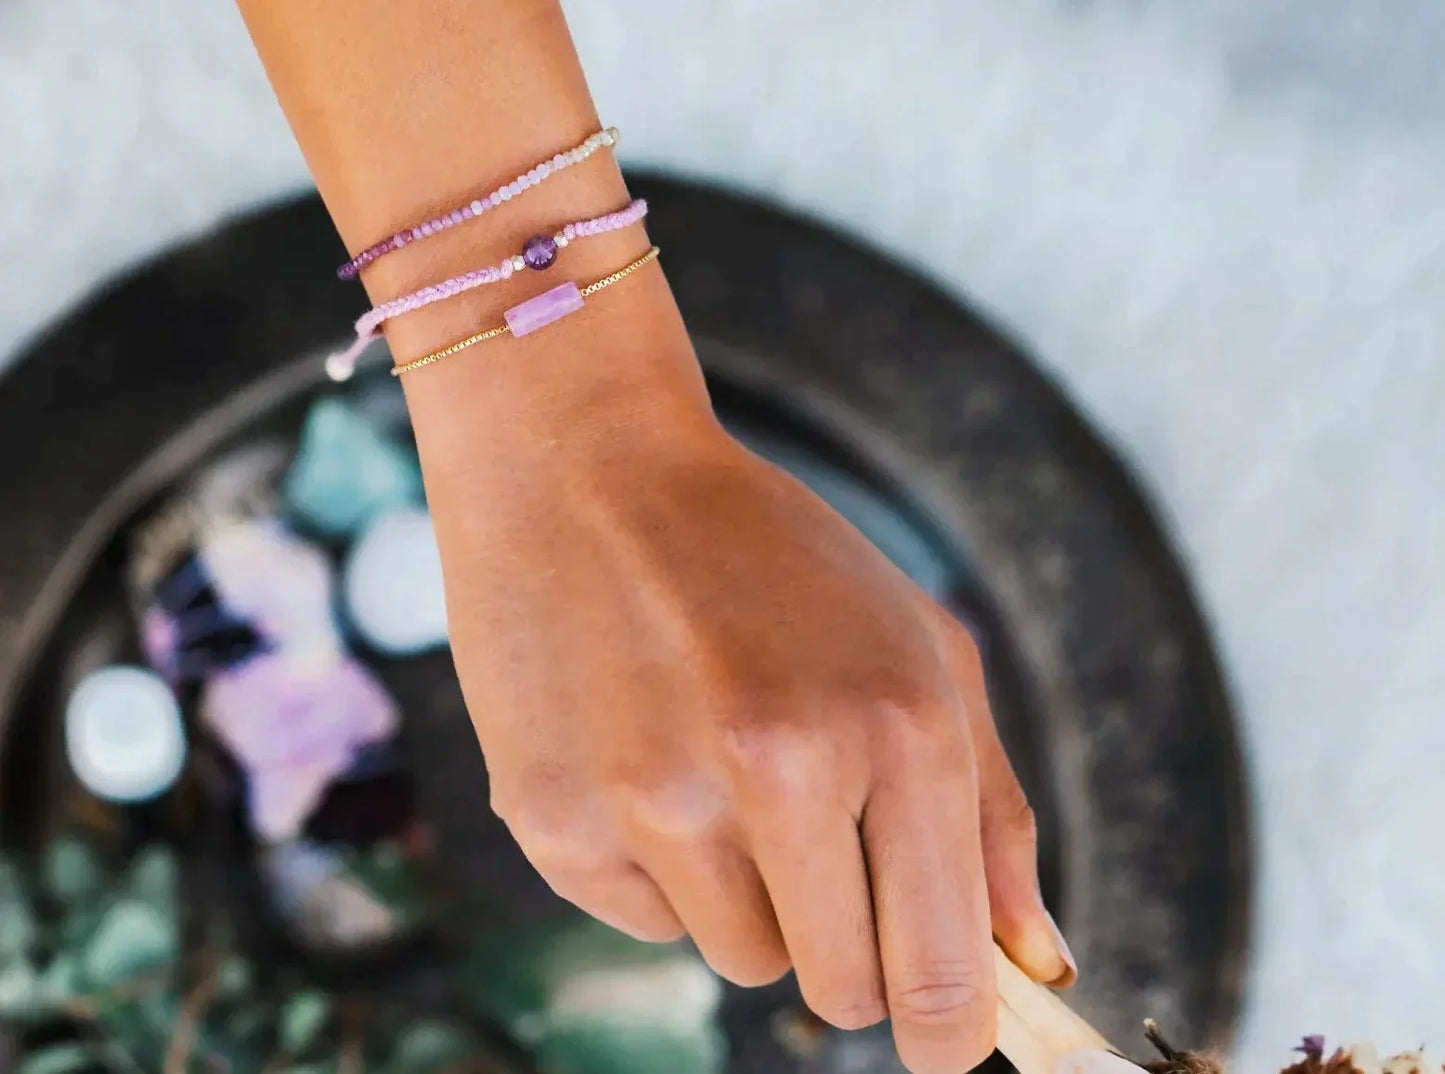 Pink & Purple Boho Bead Bracelet worn as an intention bracelet. 